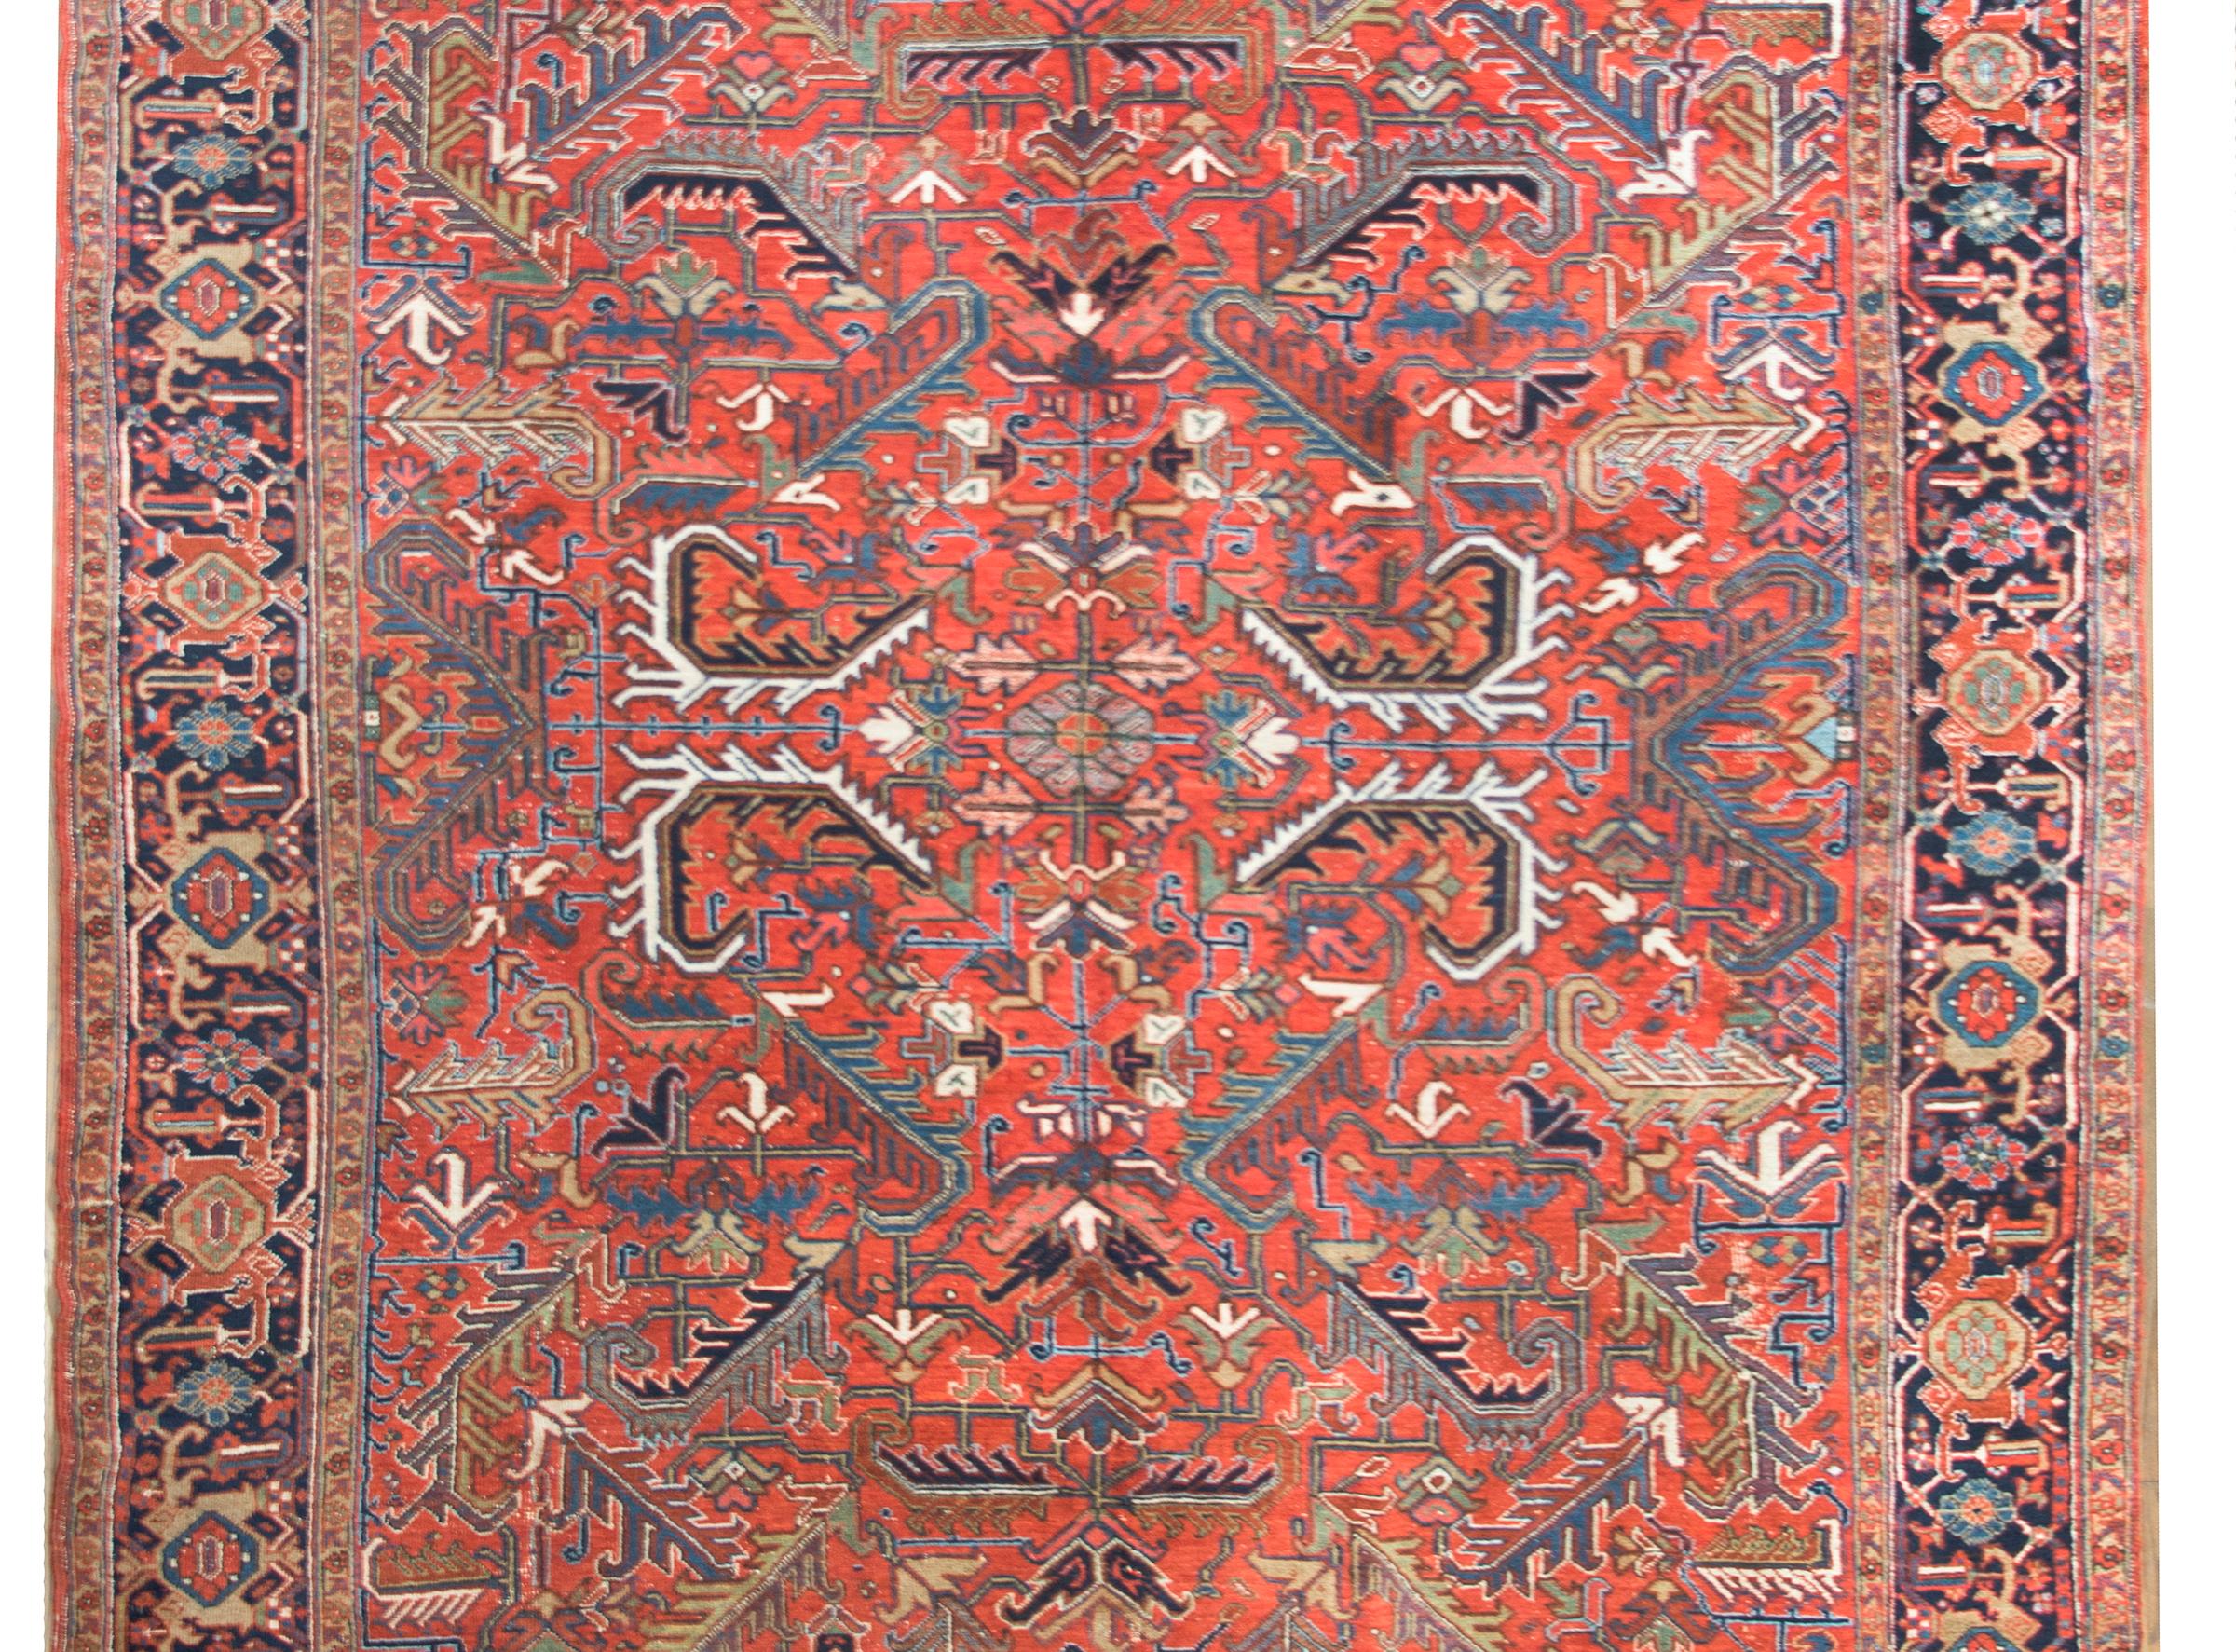 Ein wundervoller persischer Heriz-Teppich aus dem frühen 20. Jahrhundert mit einem großflächigen, gespiegelten Blumen- und Blattmuster, gewebt in den traditionellen Heriz-Farben Karminrot, helles und dunkles Indigo, Weiß, Rosa und Creme, umgeben von